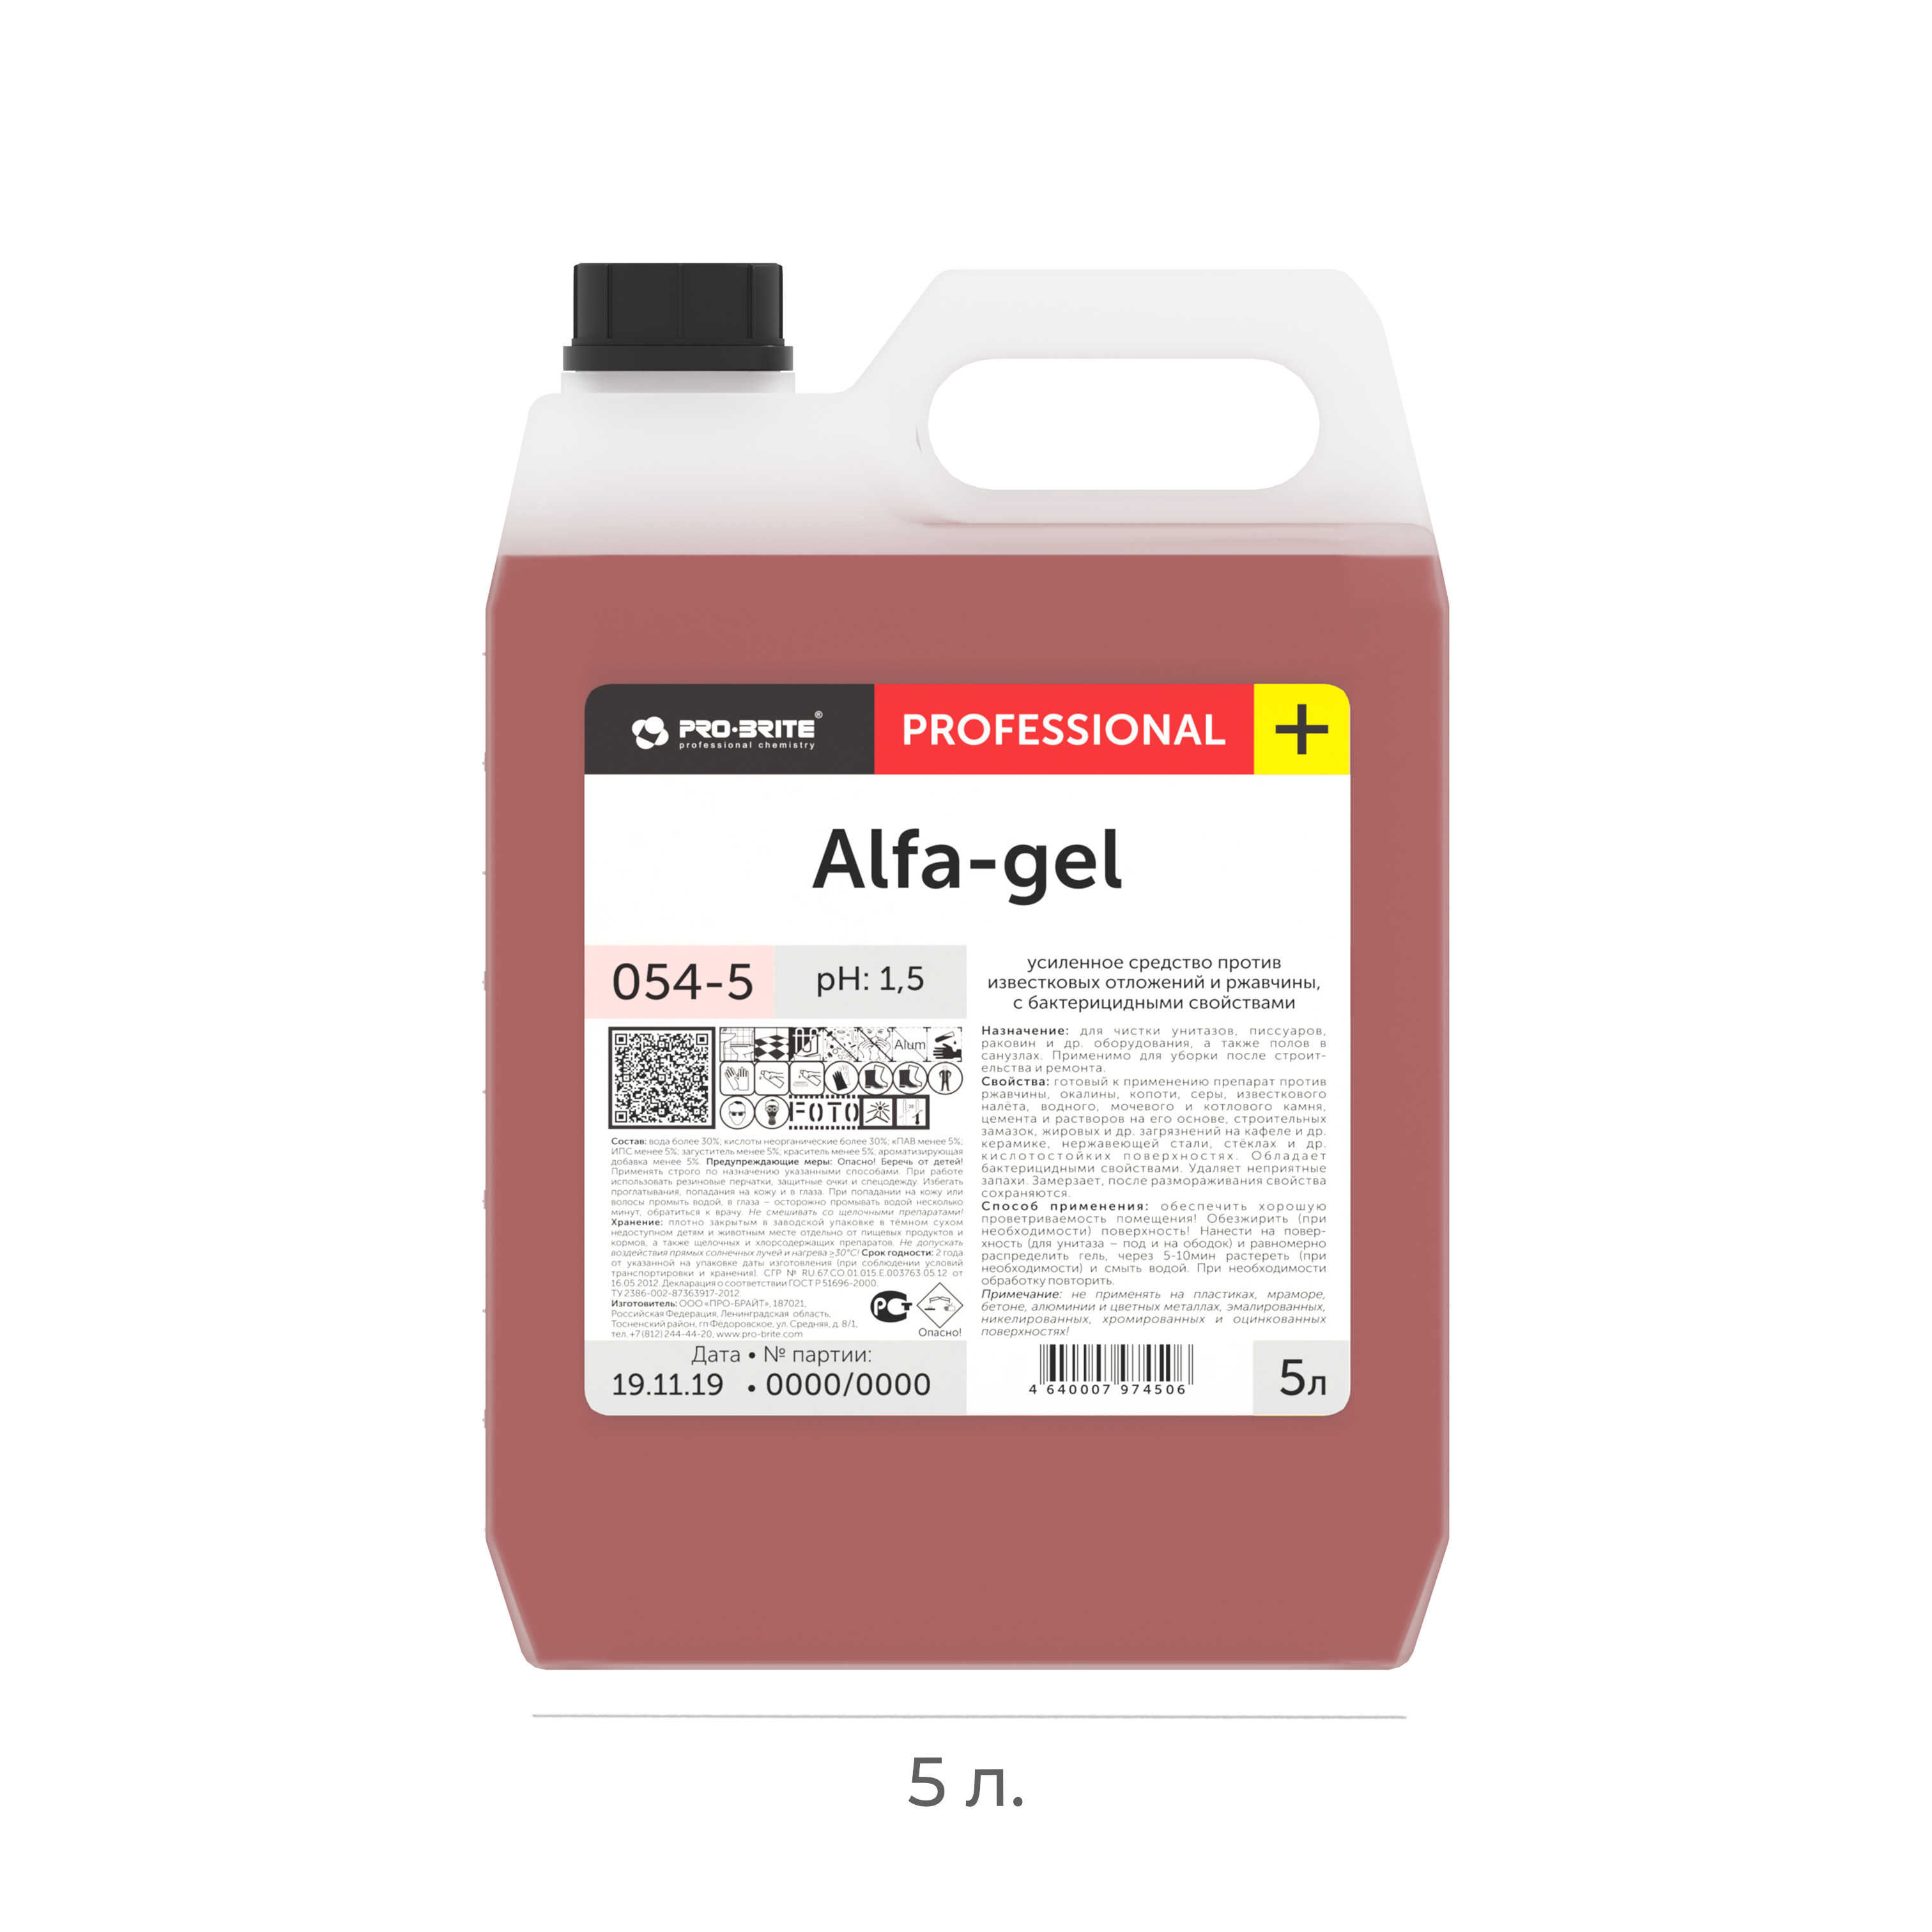 Чистящее ср-во для сантехники усиленного действия Pro-brite Alfa-gel 5л 054-5 (4)